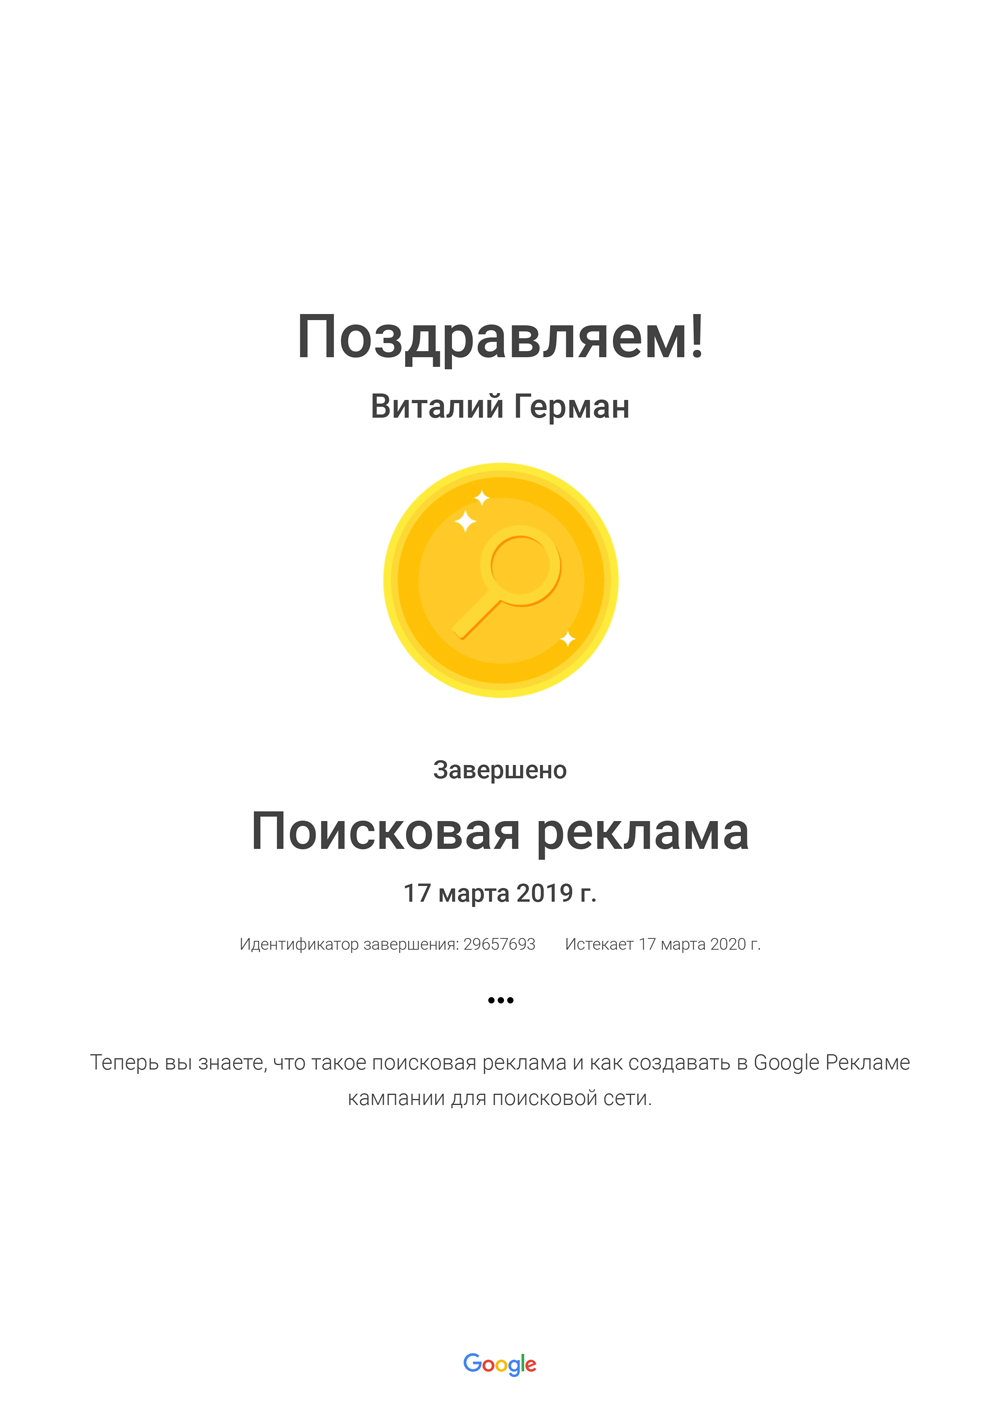 Сертификация Google Реклама поисковая реклама 2019